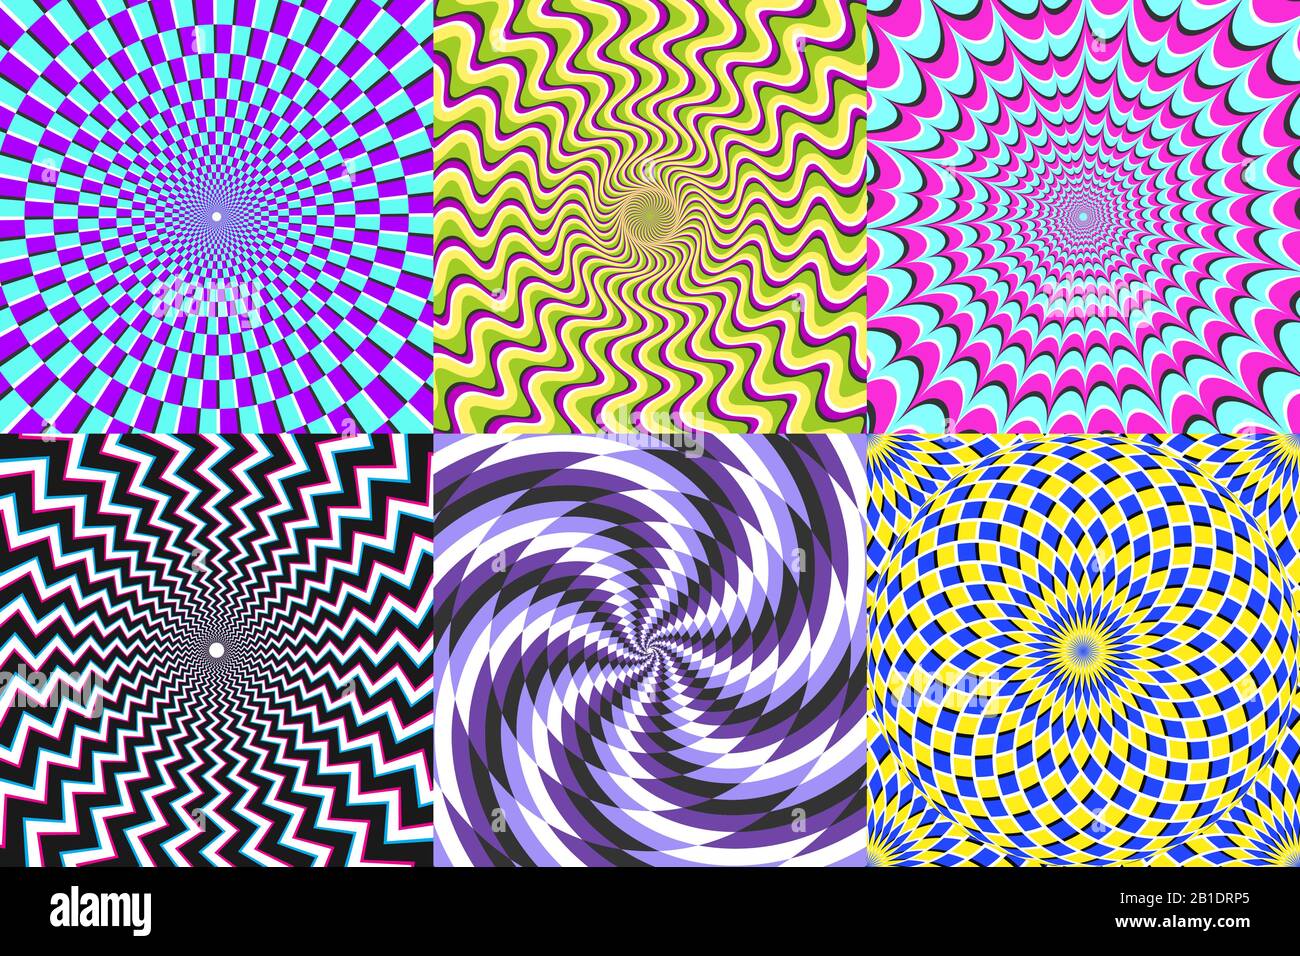 Psychedelische Spirale. Optische Täuschung, Wahn- und bunte Abstraktionshypnose-spiralförmige Vektorgrafiken Stock Vektor